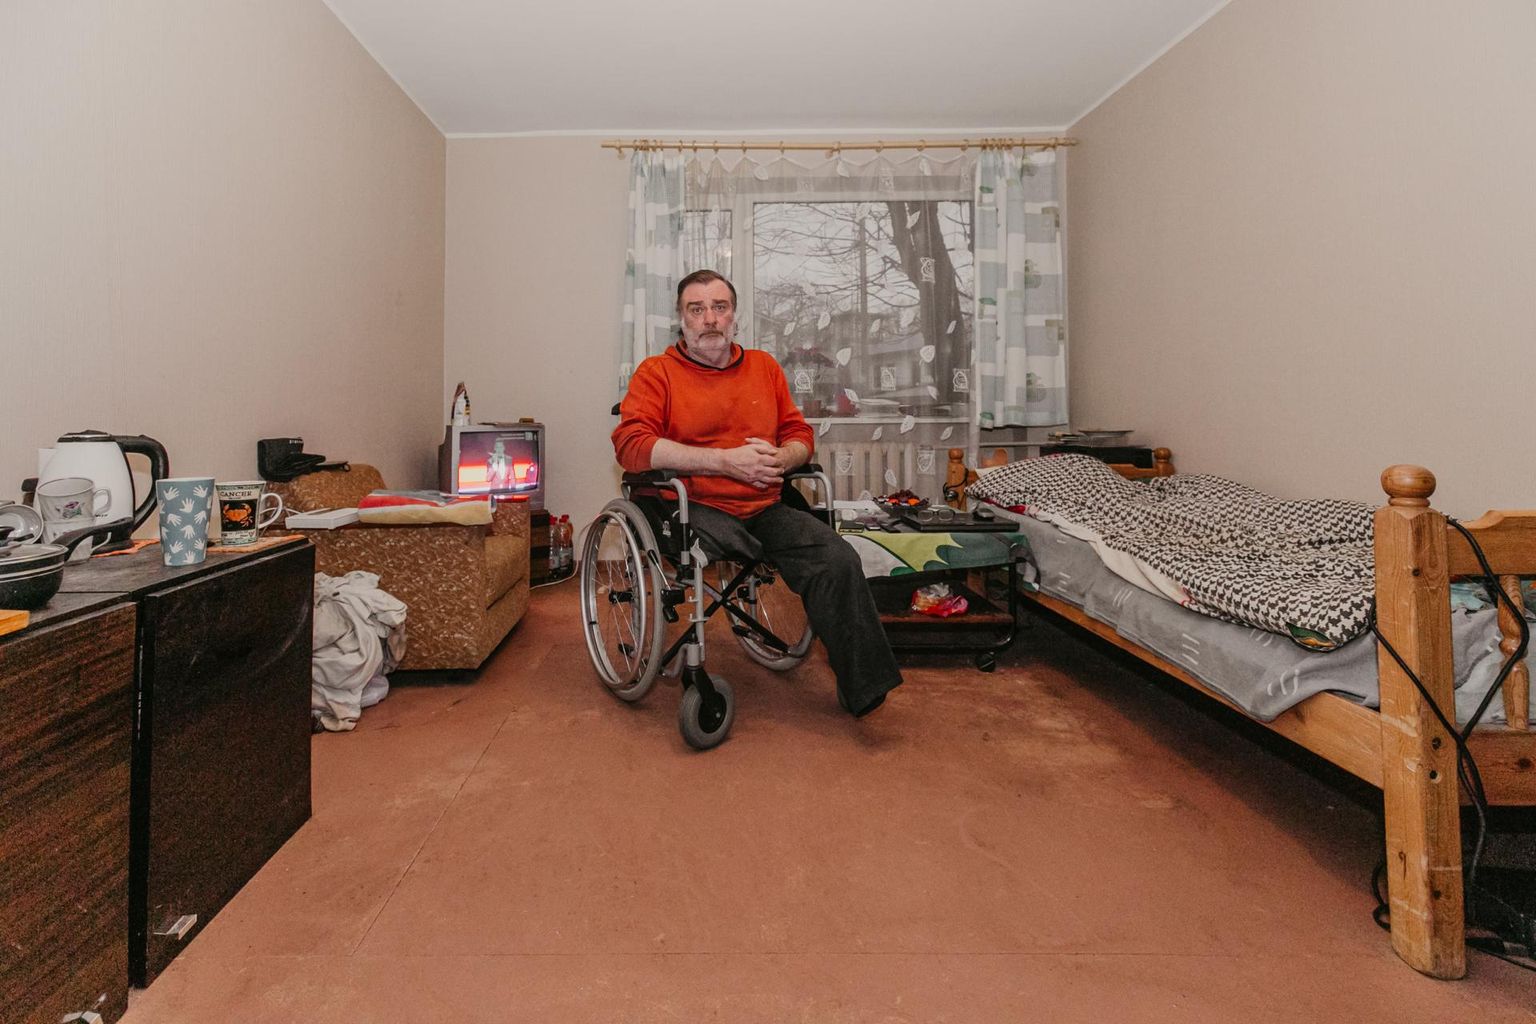 Андрей Грейнис живет в муниципальной квартире с осени 2018 года. Проблемы начались в начале прошлого года, когда он потерял и вторую ногу.